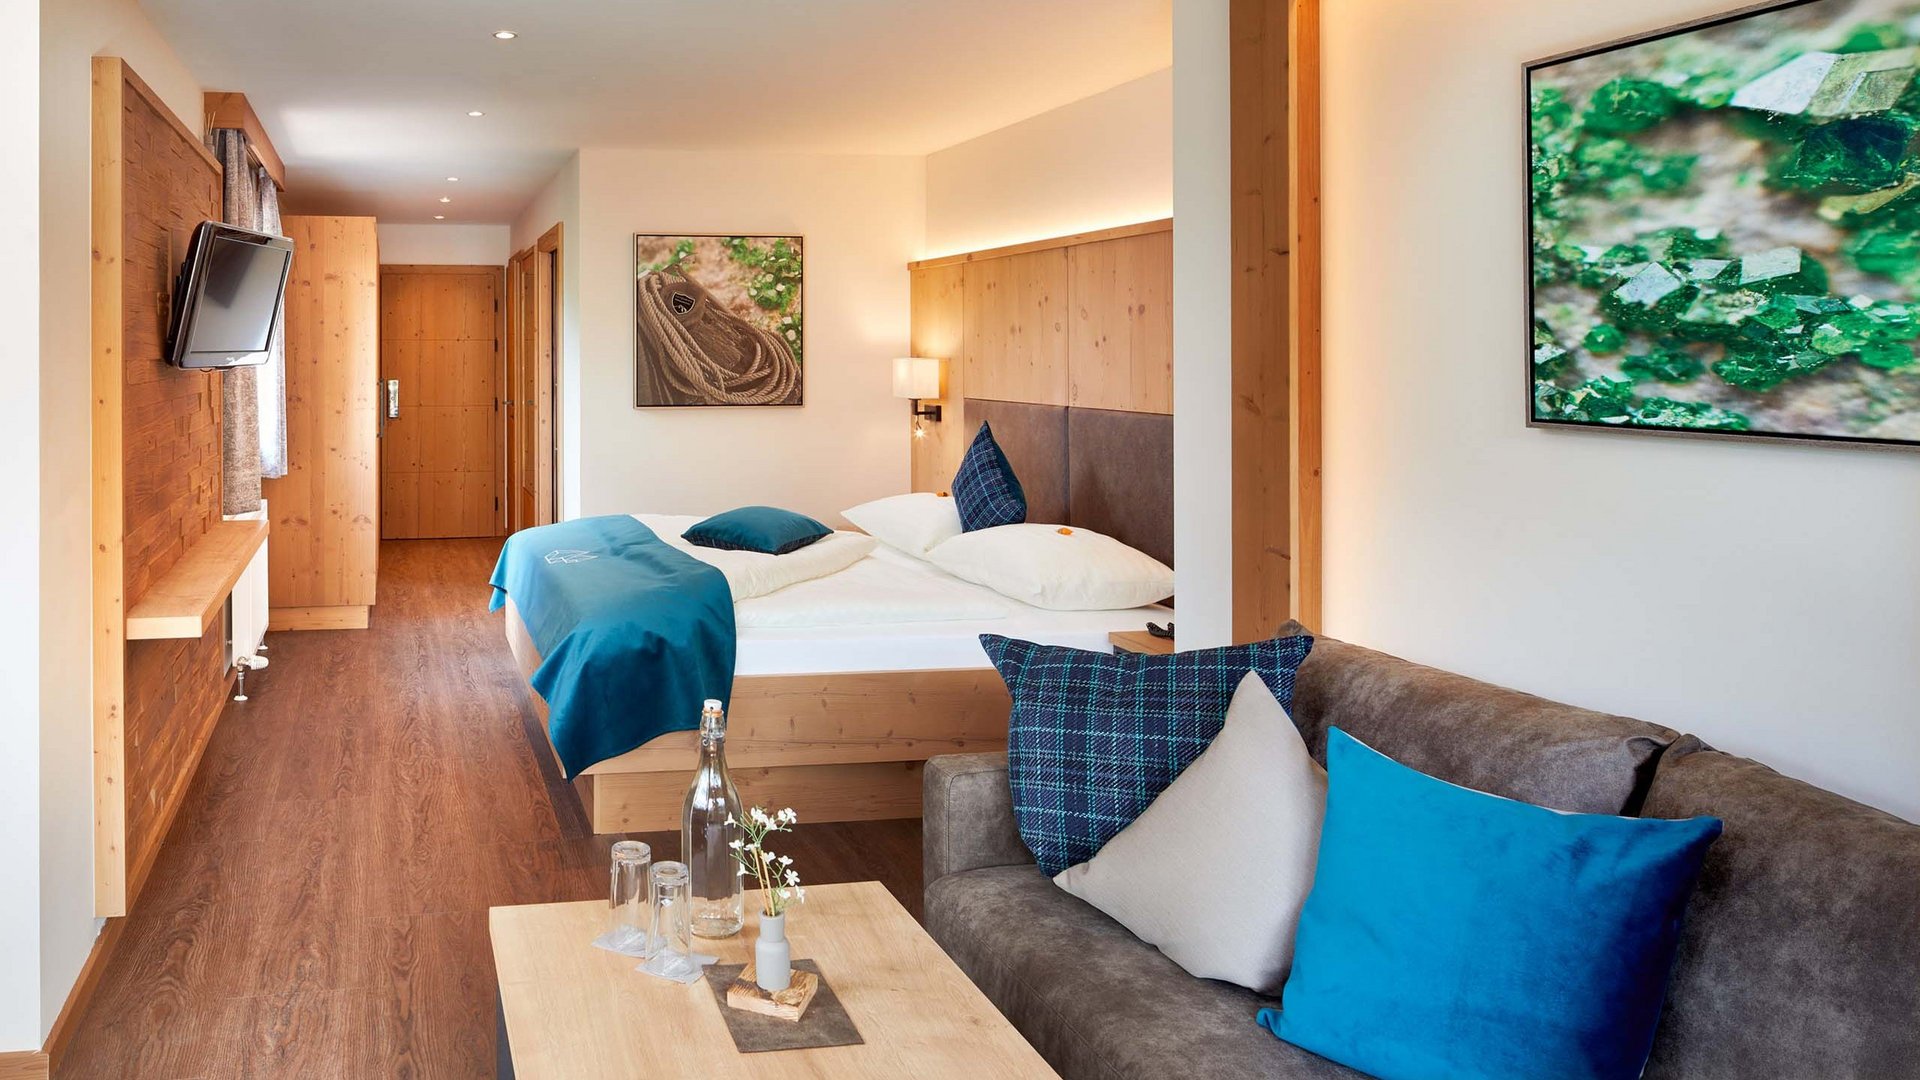 Smaragdhotel Tauernblick – your 4-star hotel near Wildkogel